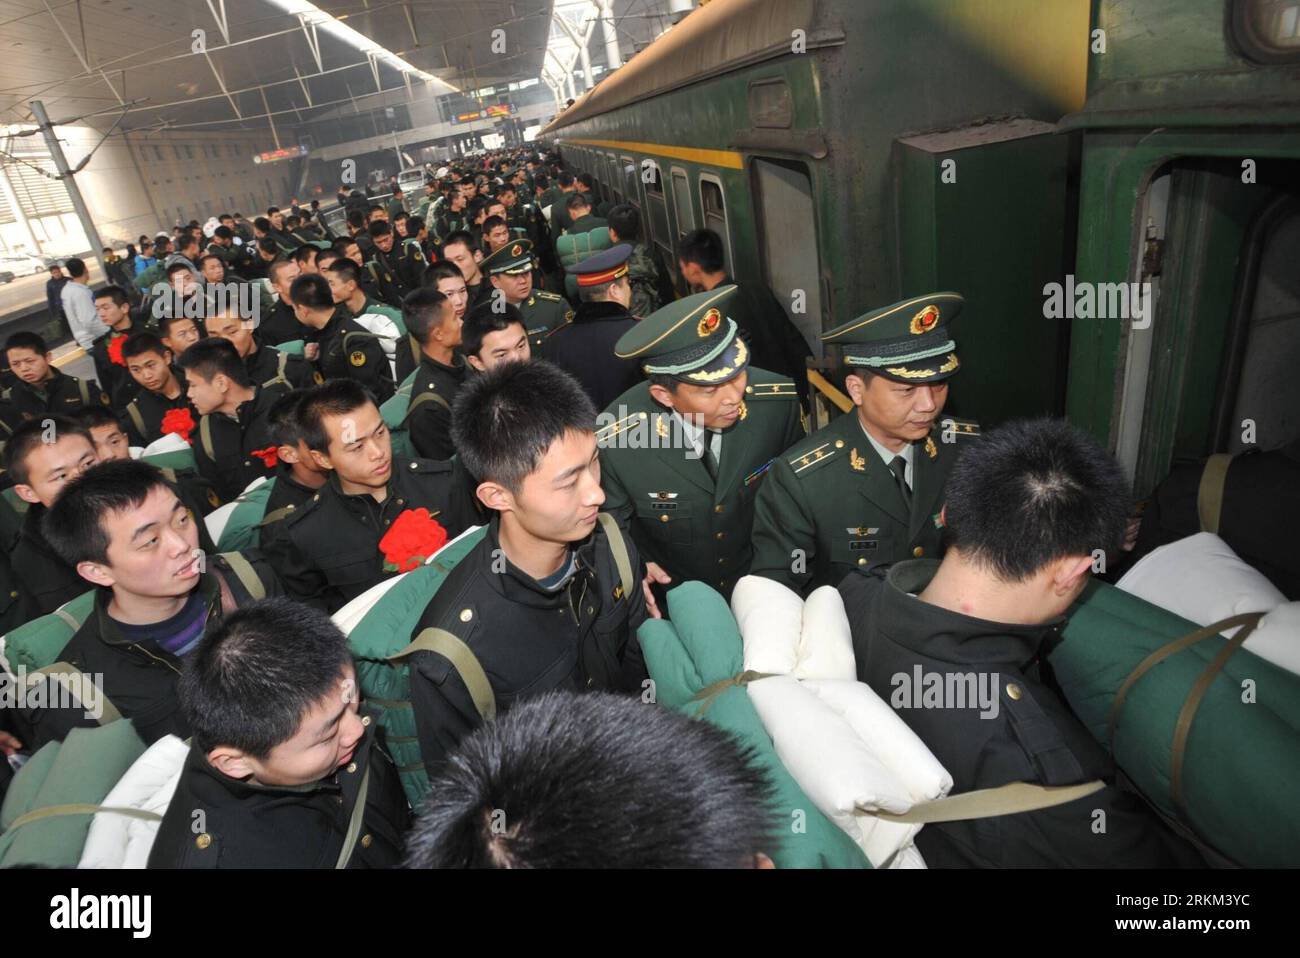 Bildnummer: 56459215 Datum: 25.11.2011 Copyright: imago/Xinhua (111125) -- TIANJIN, November 25, 2011 (Xinhua) -- pensionierte Soldaten steigen am Bahnhof in Tianjin, Nordchina, am 25. November 2011 in einen Zug ein. Viele Soldaten absolvierten den Militärdienst in diesem Jahr und müssen das Bataillon verlassen, in dem sie jahrelang gedient haben. (Xinhua/Wang Xiaoming) (mcg) CHINA-SOLDIERS-RENTE (CN) PUBLICATIONxNOTxINxCHN Gesellschaft Militär Volksbefreiungsarmee Soldat Rückkehr Militärdienst Ende Zug Bahn China x0x xtm 2011 quer 56459215 Datum 25 11 2011 Copyright Imago XINHUA Tianjin Nov 25 2011 XINHUA im Ruhestand verkauft Stockfoto